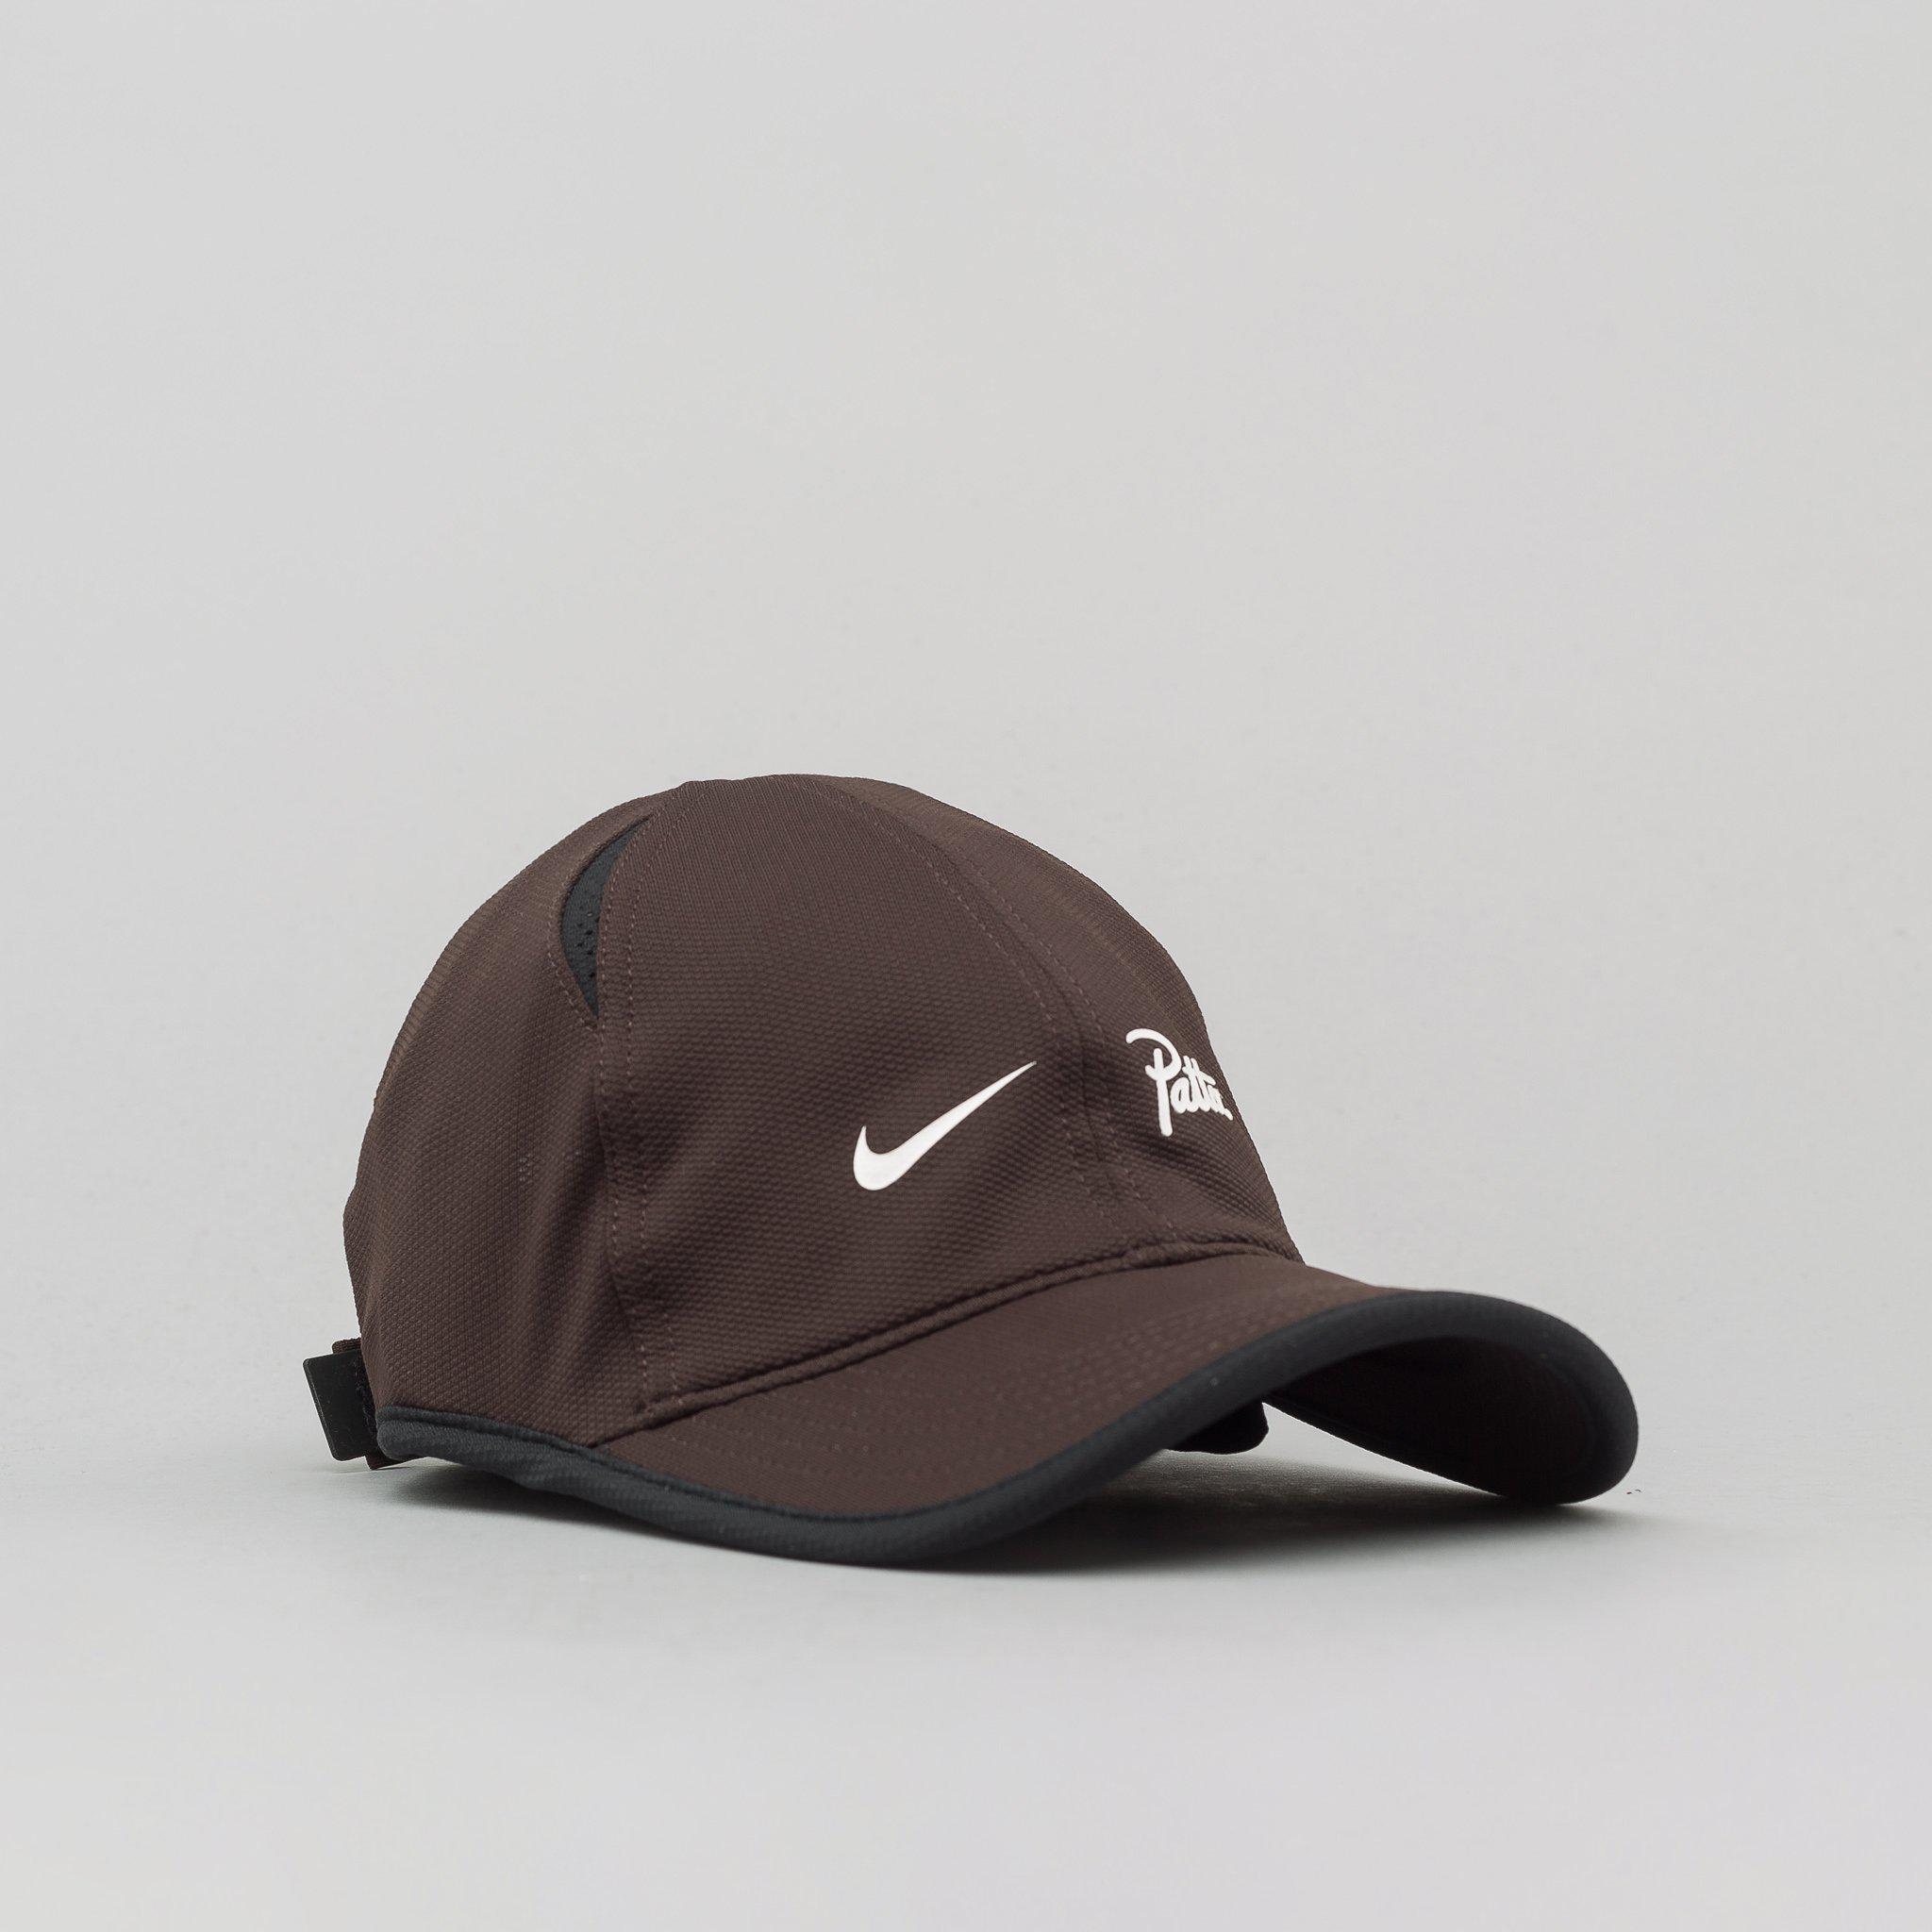 Nike X Patta Featherlight Cap In Velvet Brown for Men - Lyst